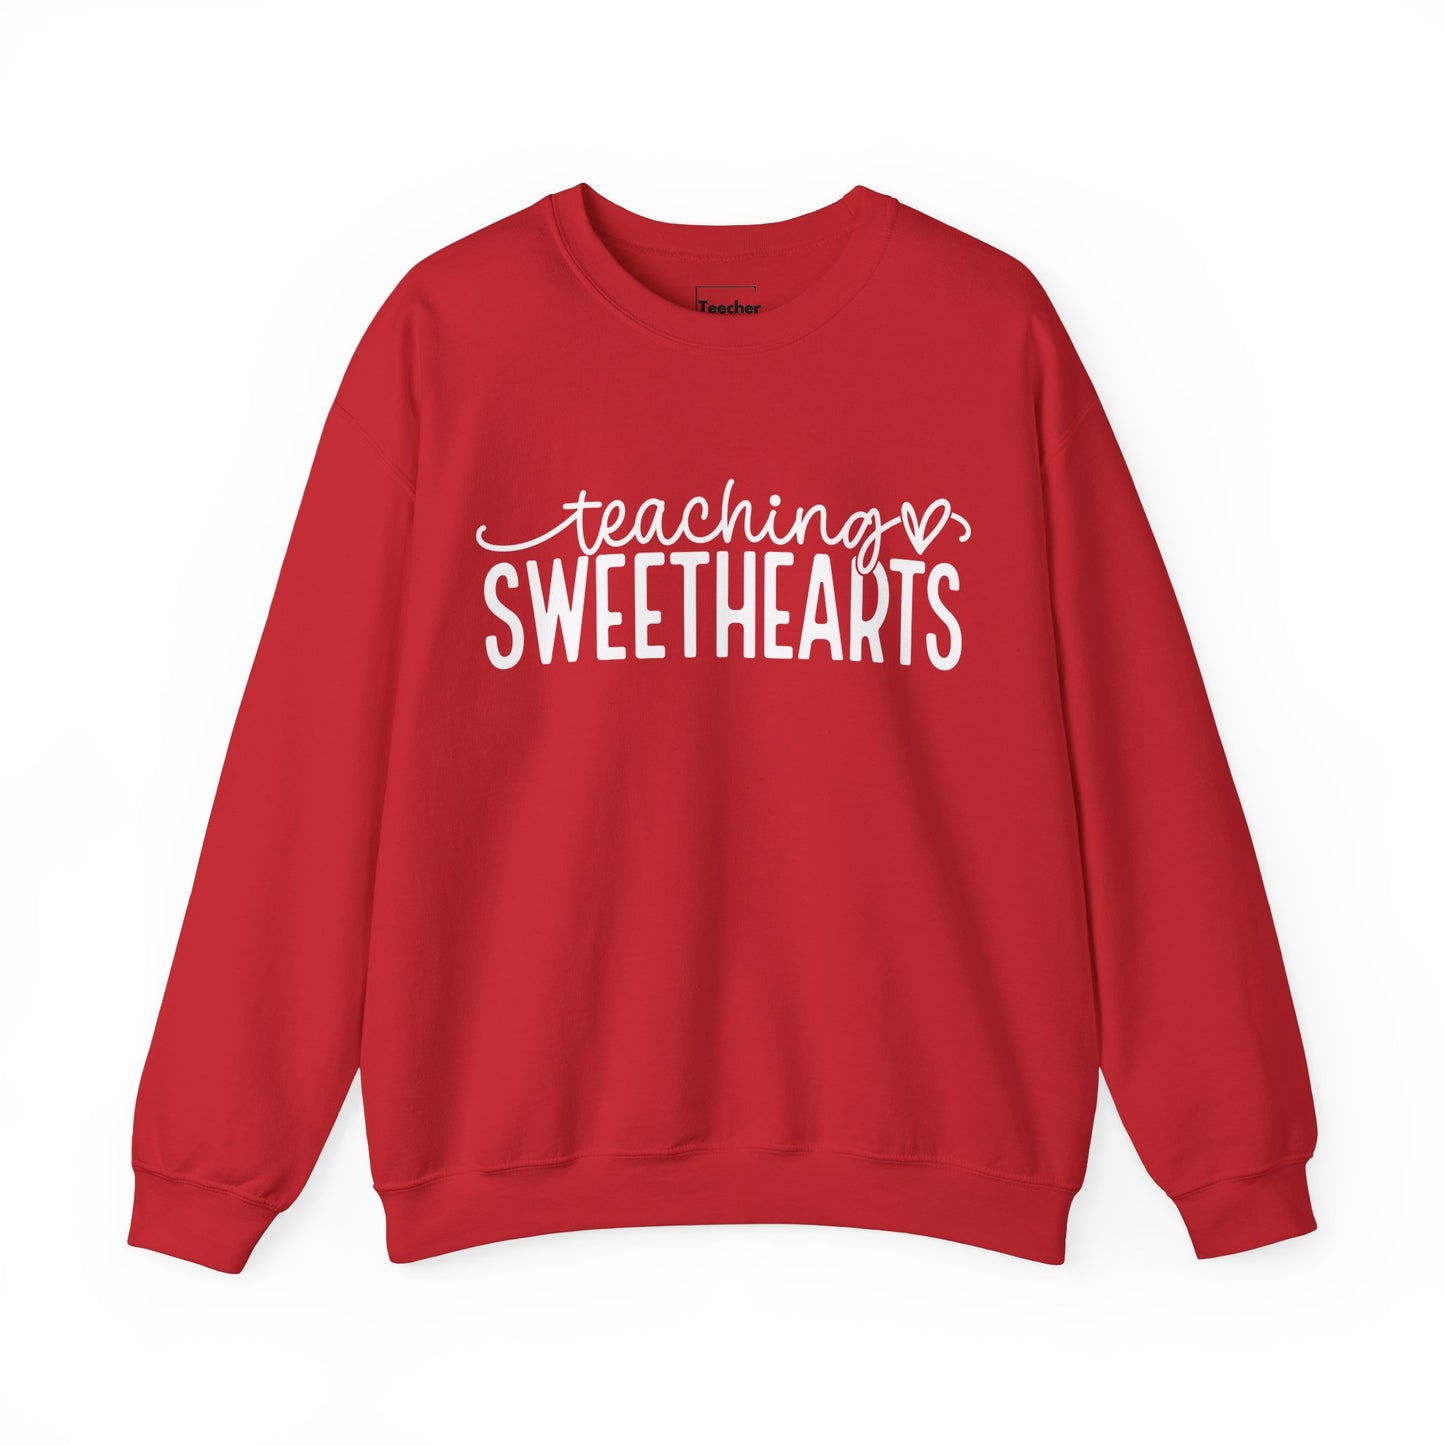 Sweethearts Sweatshirt